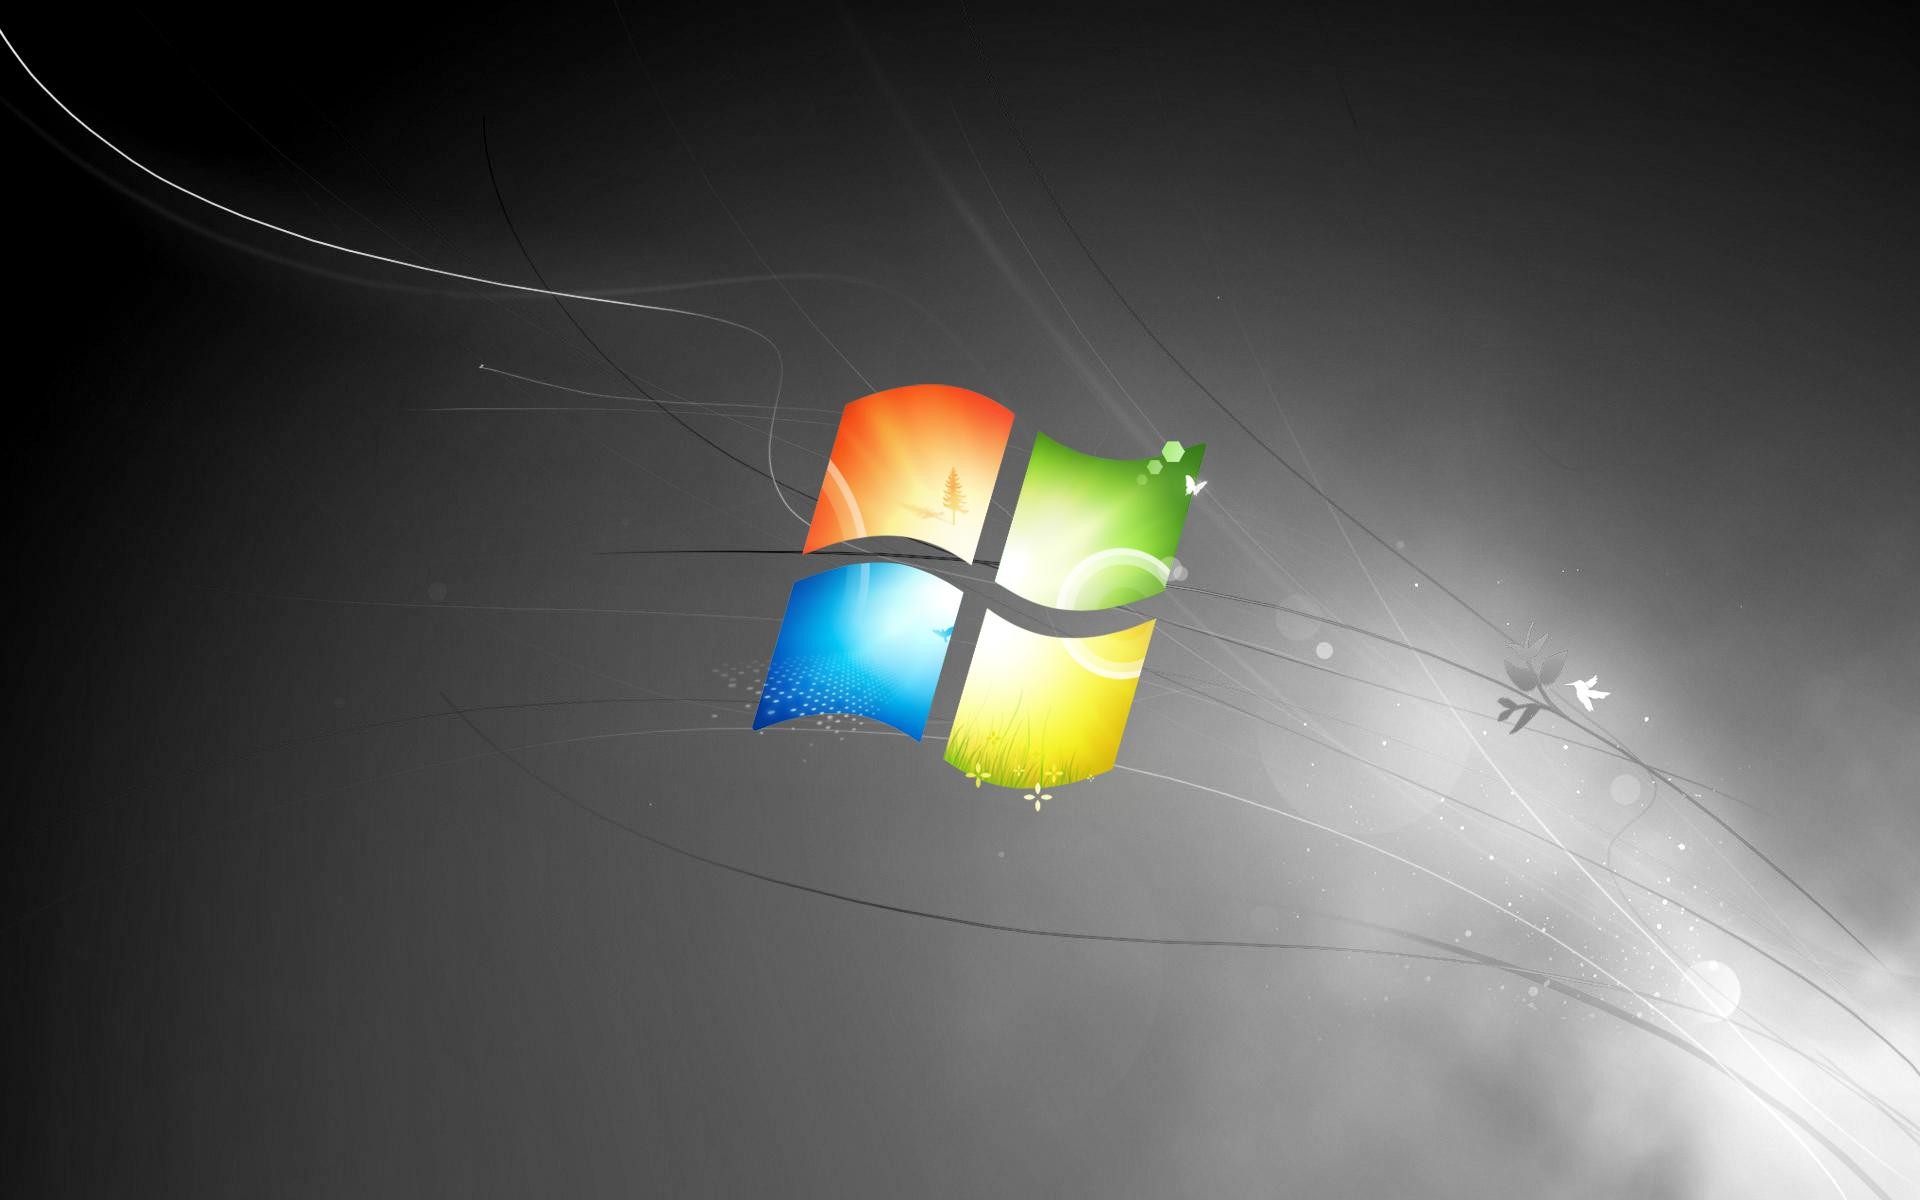 Hình nền đen cho phần mềm Windows 7 là sự kết hợp hoàn hảo giữa sự thanh lịch và cổ điển. Được thiết kế để giúp bạn dễ dàng truy cập vào tất cả các ứng dụng yêu thích của mình, hình nền đen của Windows 7 là một lựa chọn tuyệt vời cho người dùng năng động và muốn thể hiện cá tính của mình.